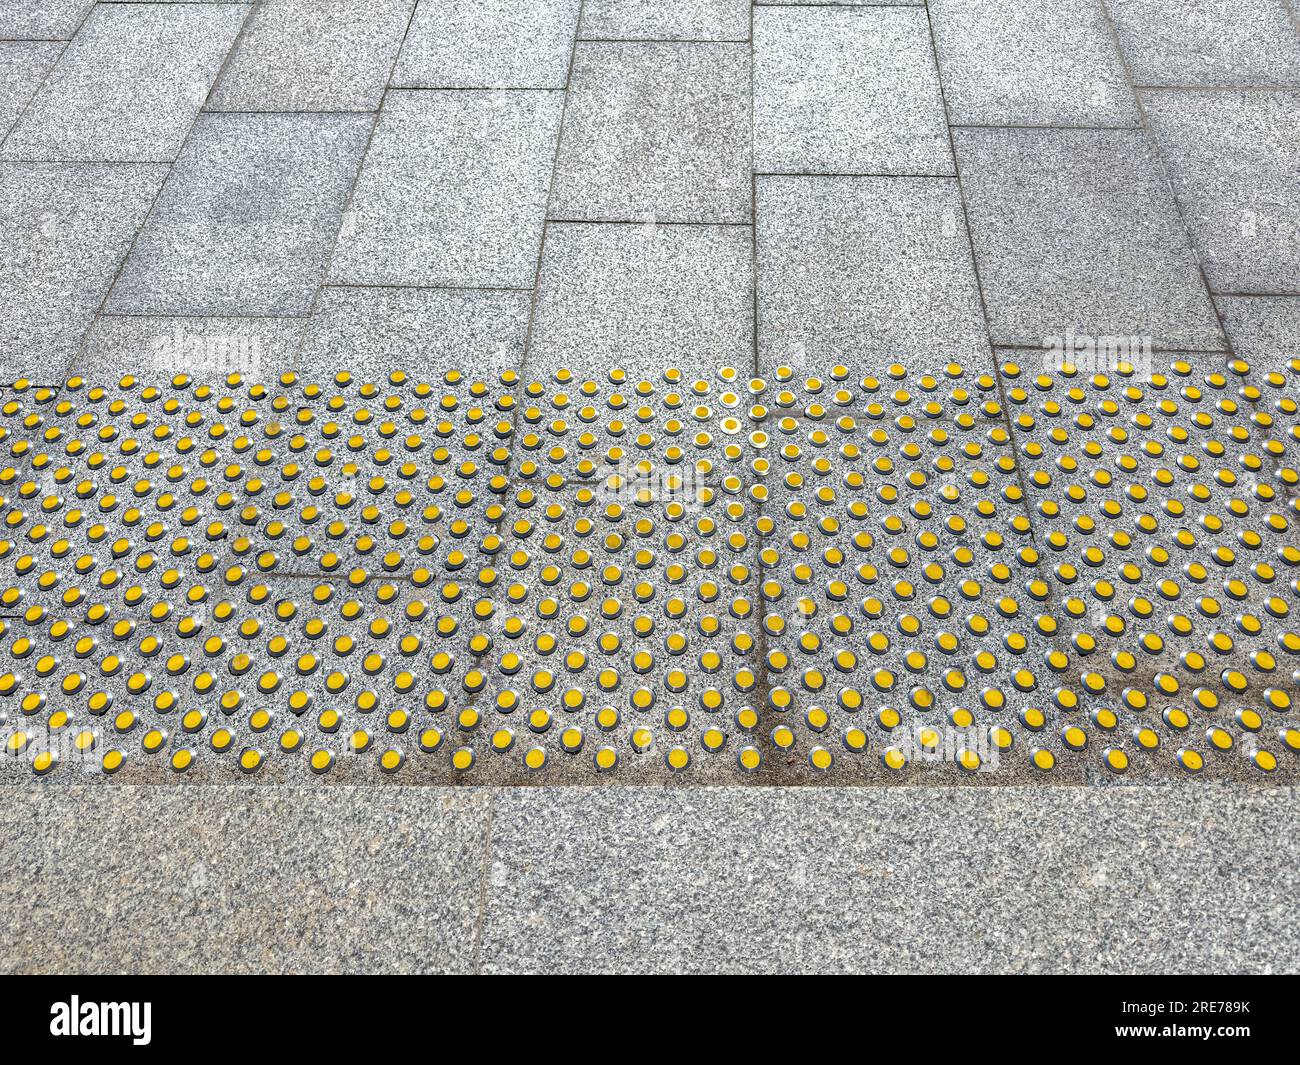 Taktile Fußbodenmarkierungen auf dem Gehweg als Orientierungshilfe für sehbehinderte Personen. Oberfläche für Sehbehinderte. Stockfoto